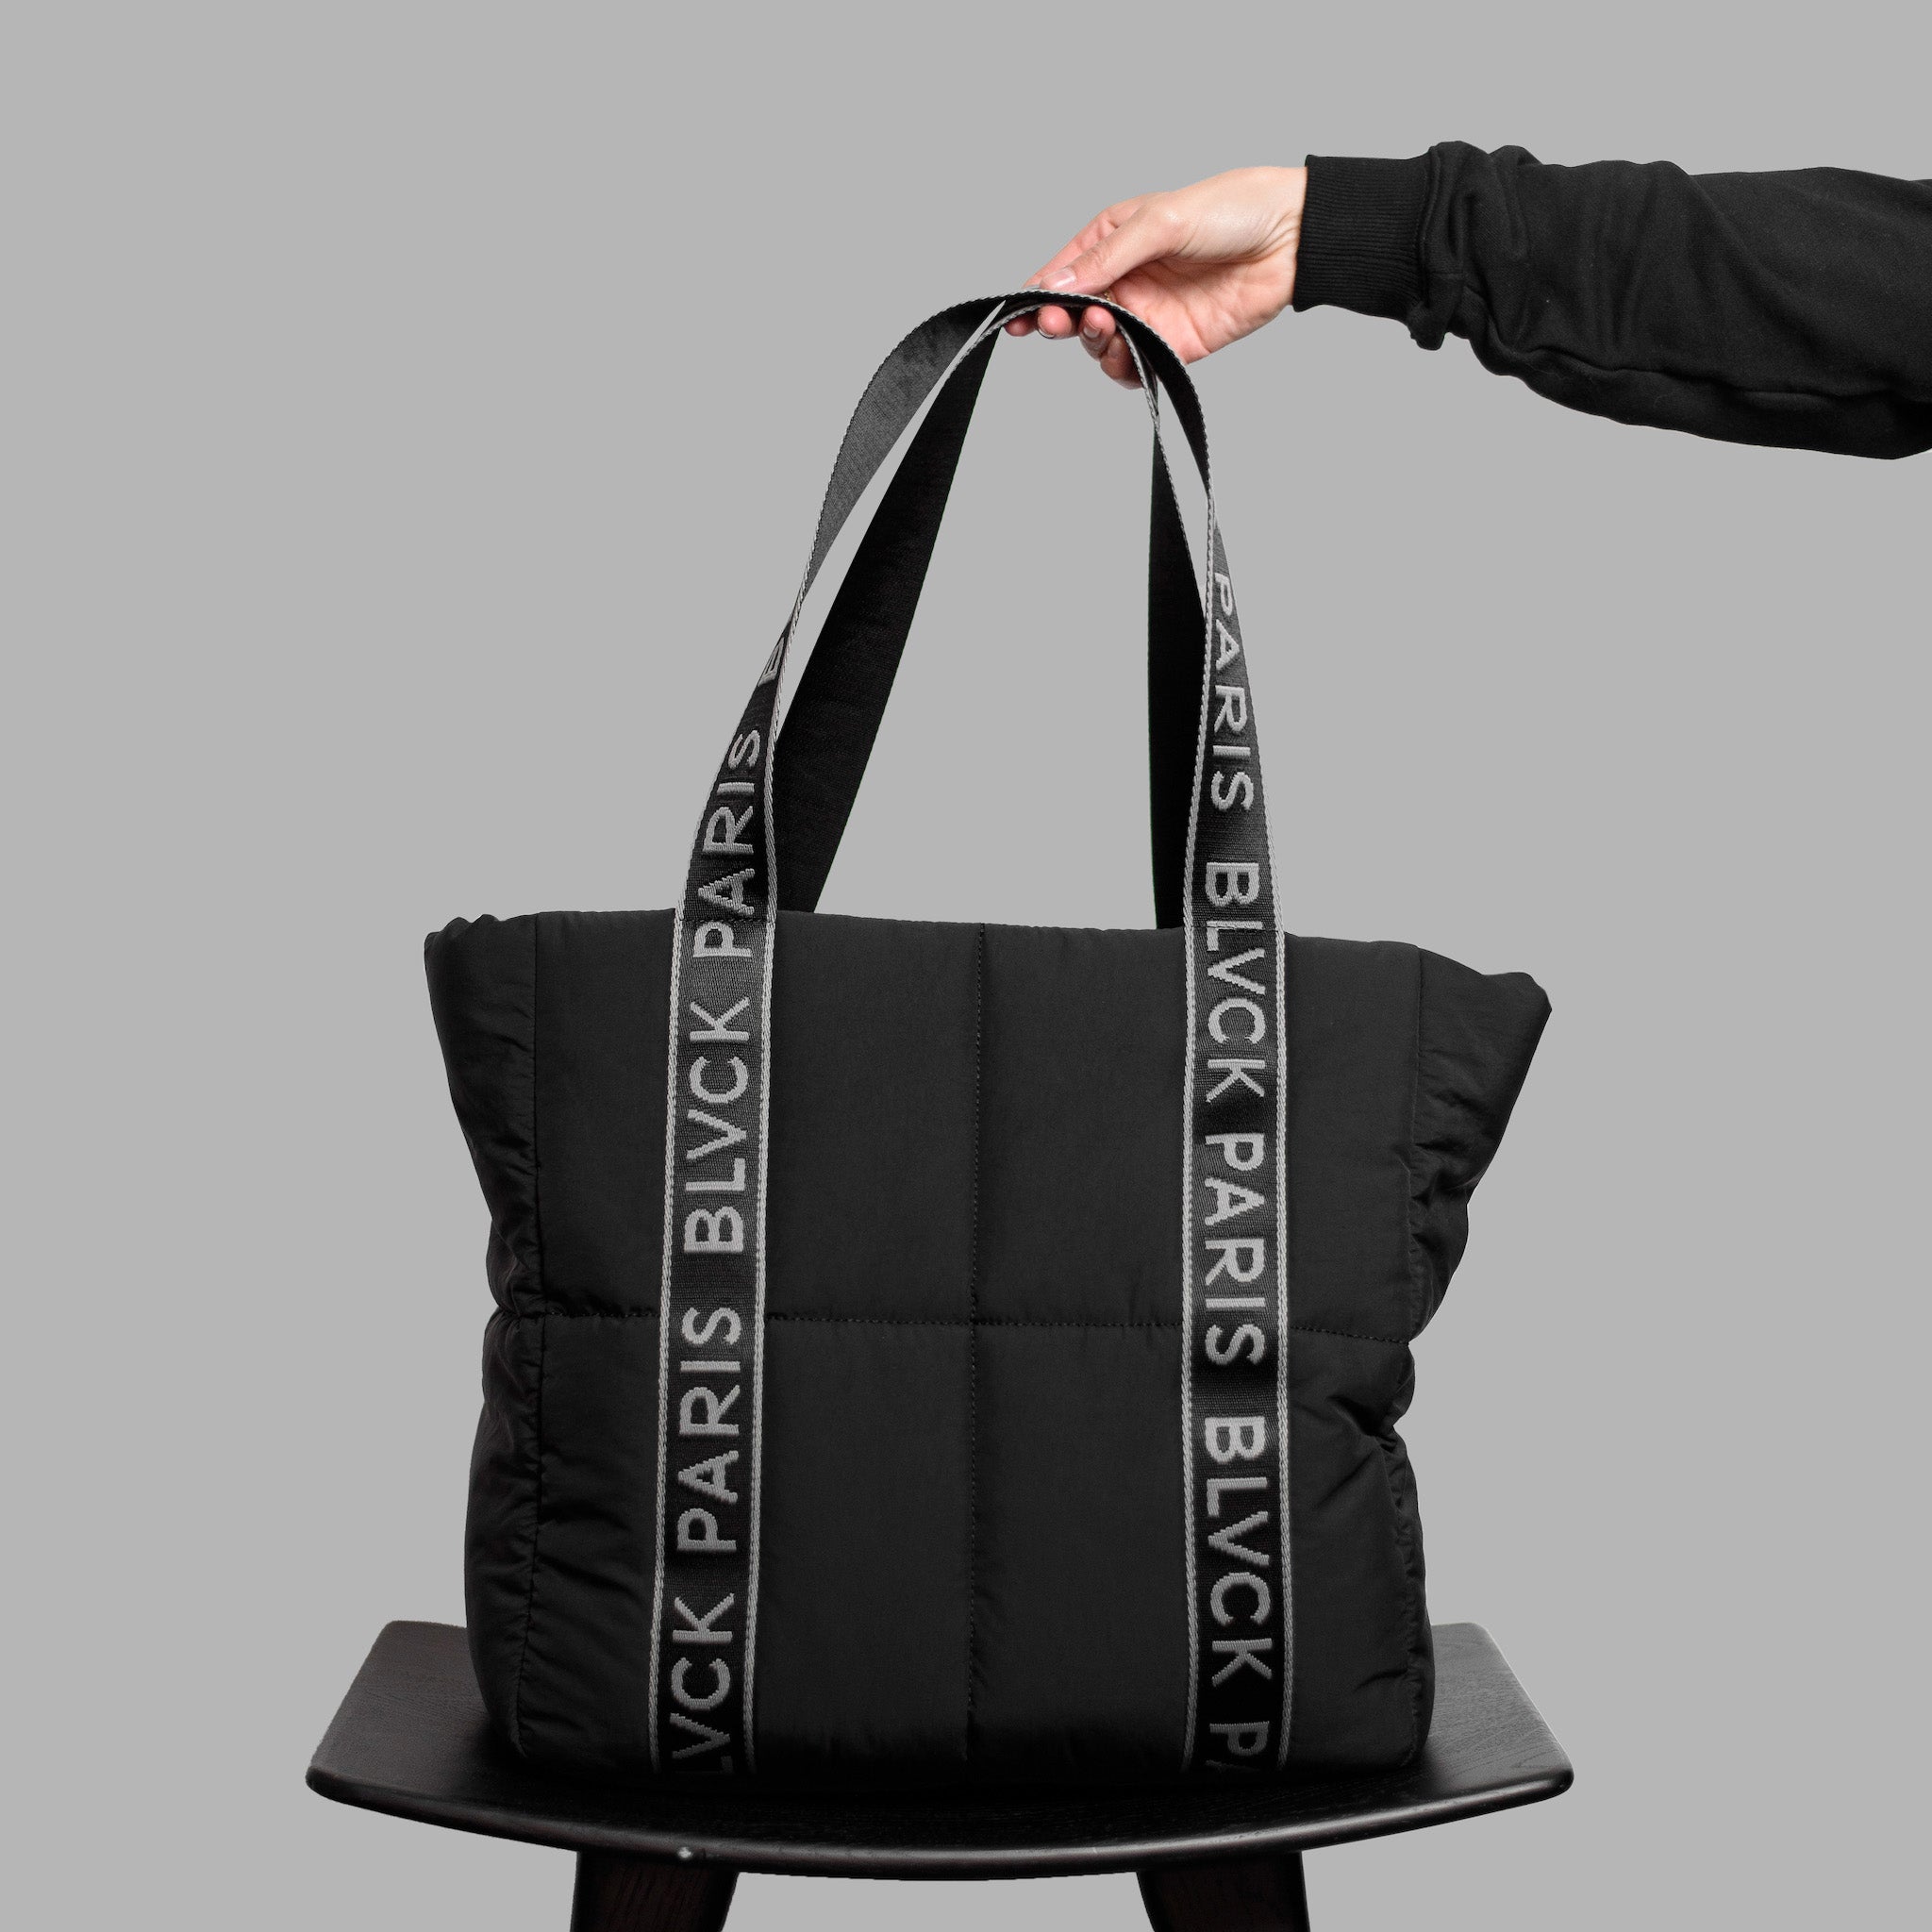 2bb Black Tote Bag